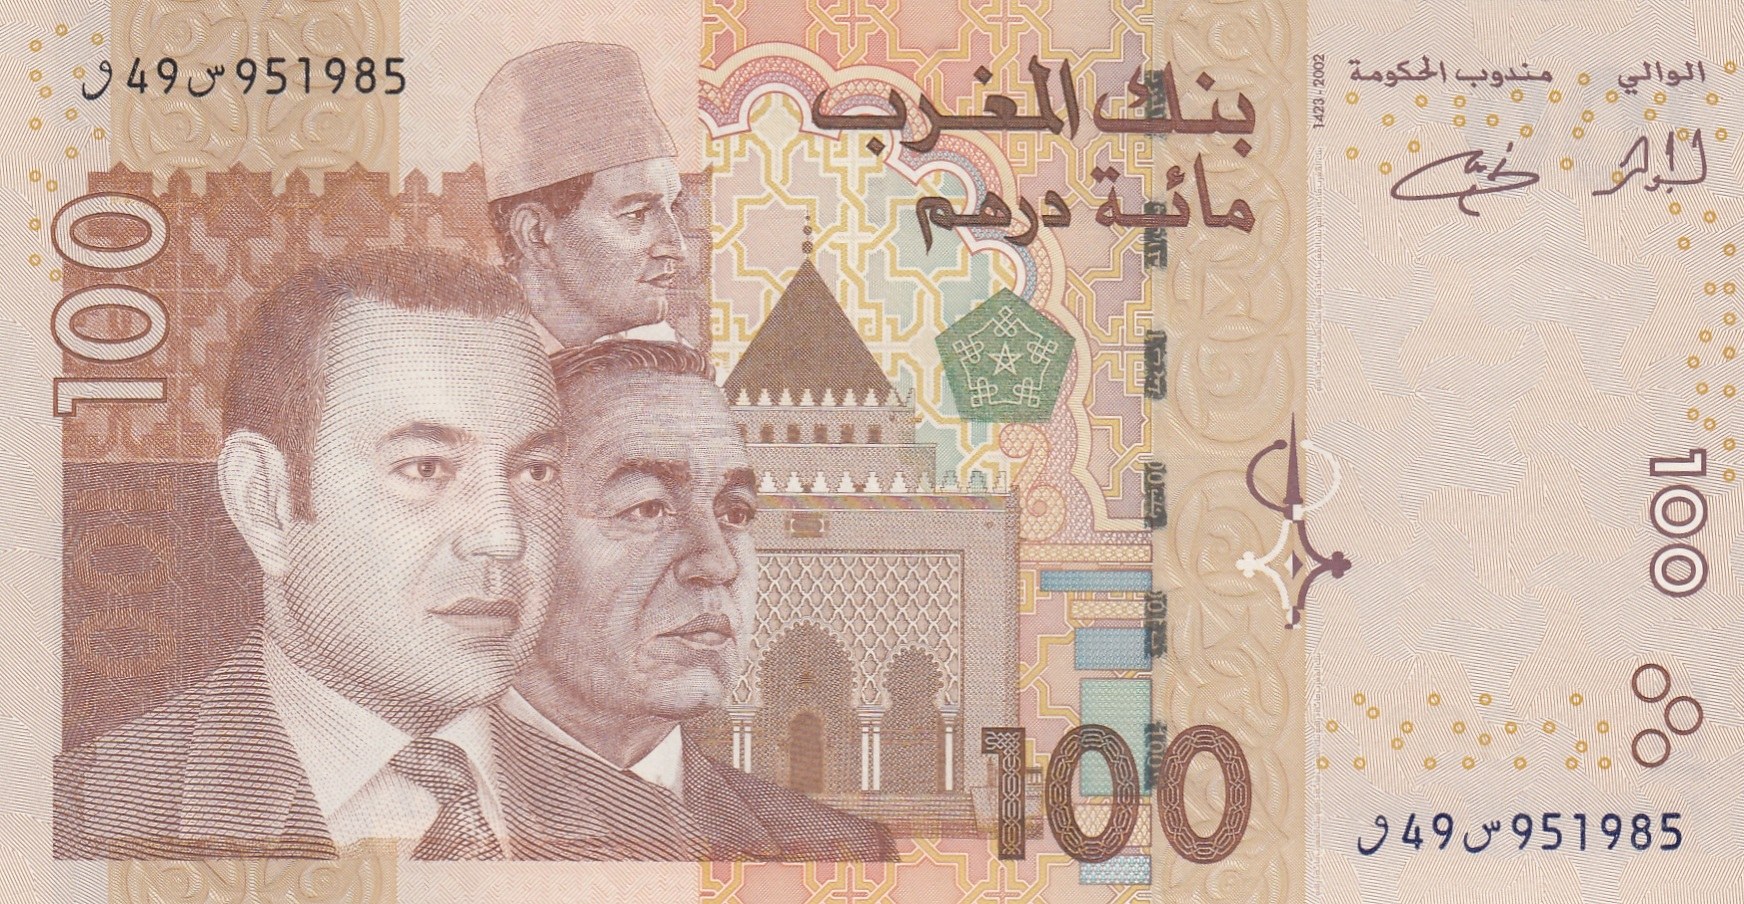 12000 дирхам. 100 Дирхам Марокко банкнота. Марокканские купюры. Валюта Марокко. Марокканские дирхамы.